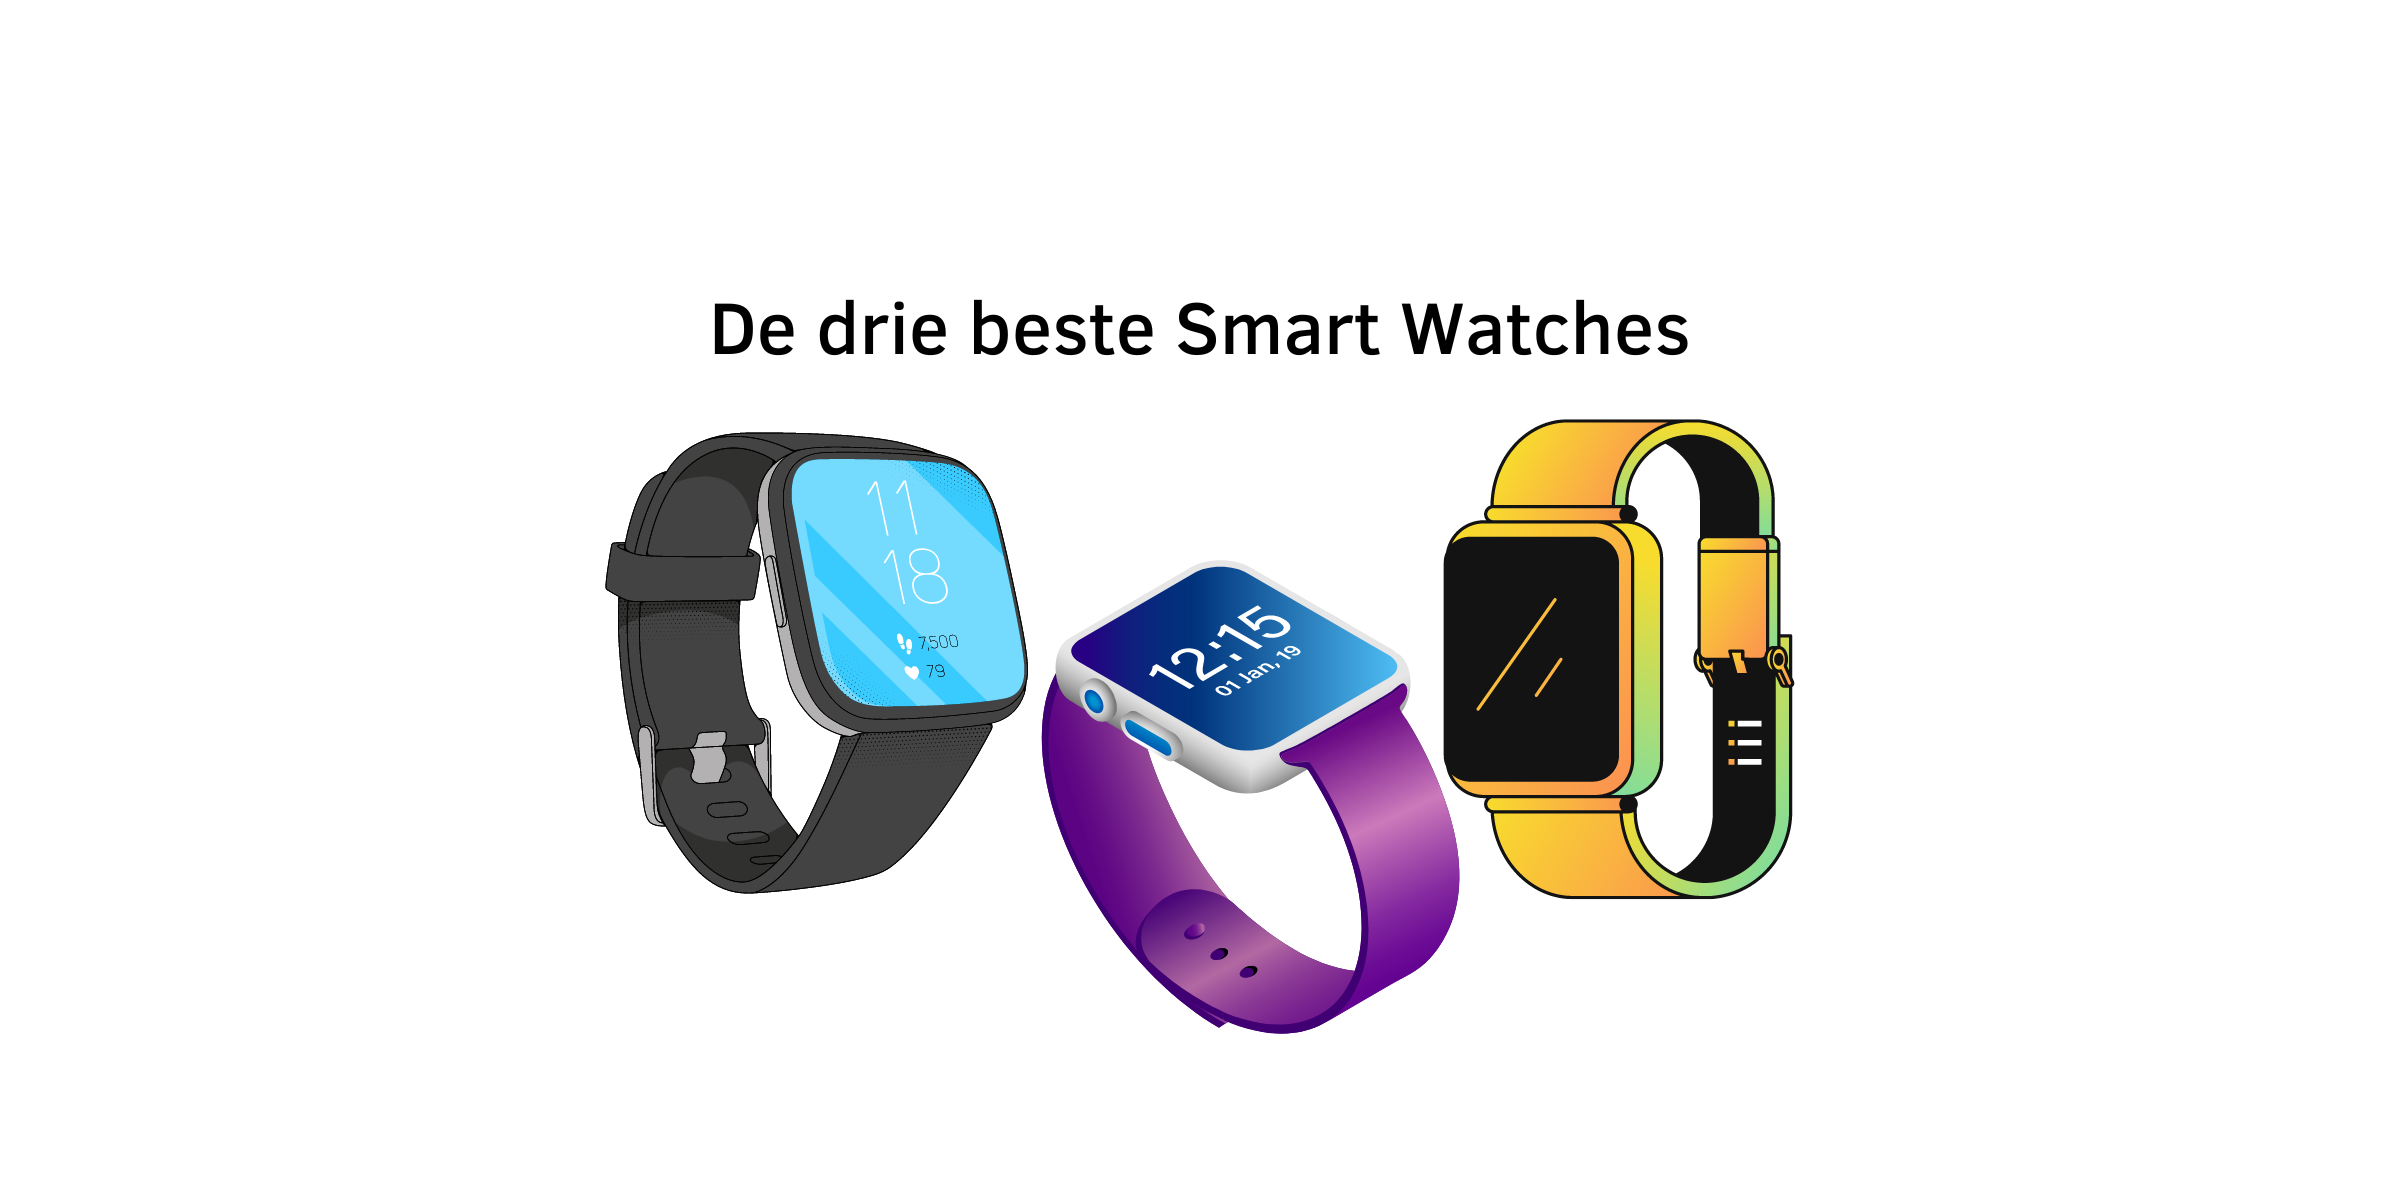 De drie beste smart watches